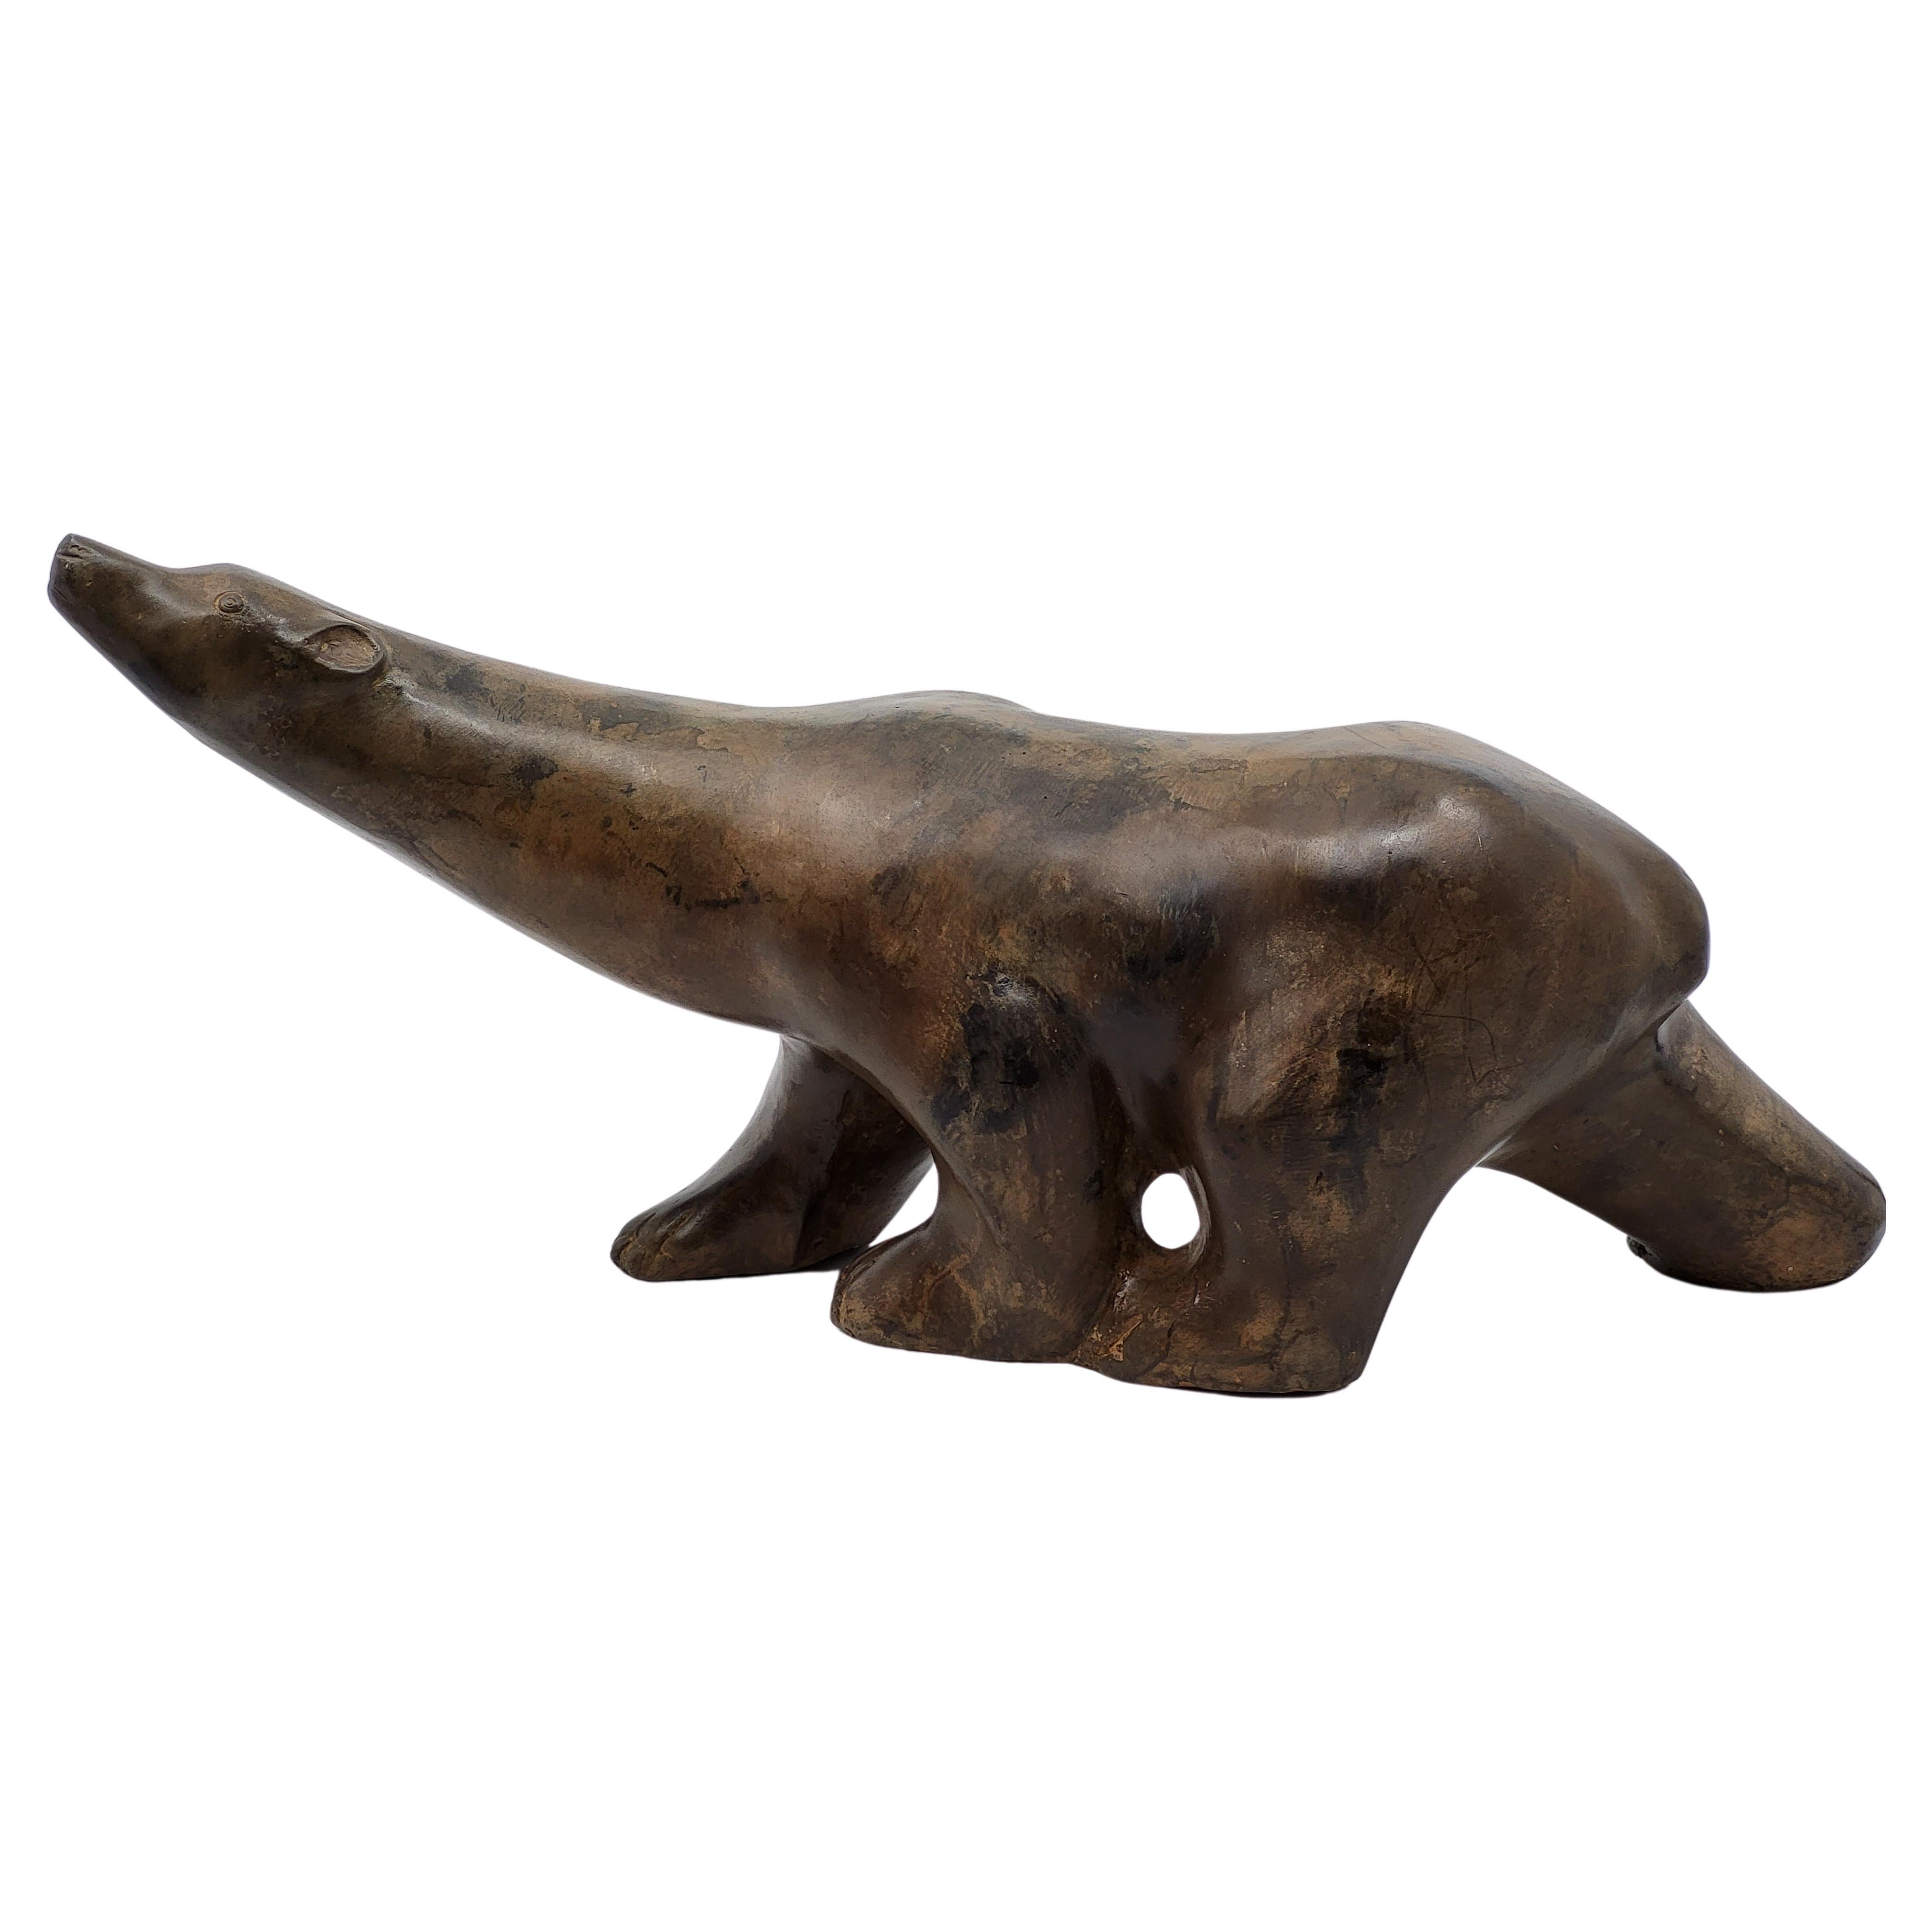  Ours Polaire grande taille en bronze à patine brune Français de Pierre Chenet